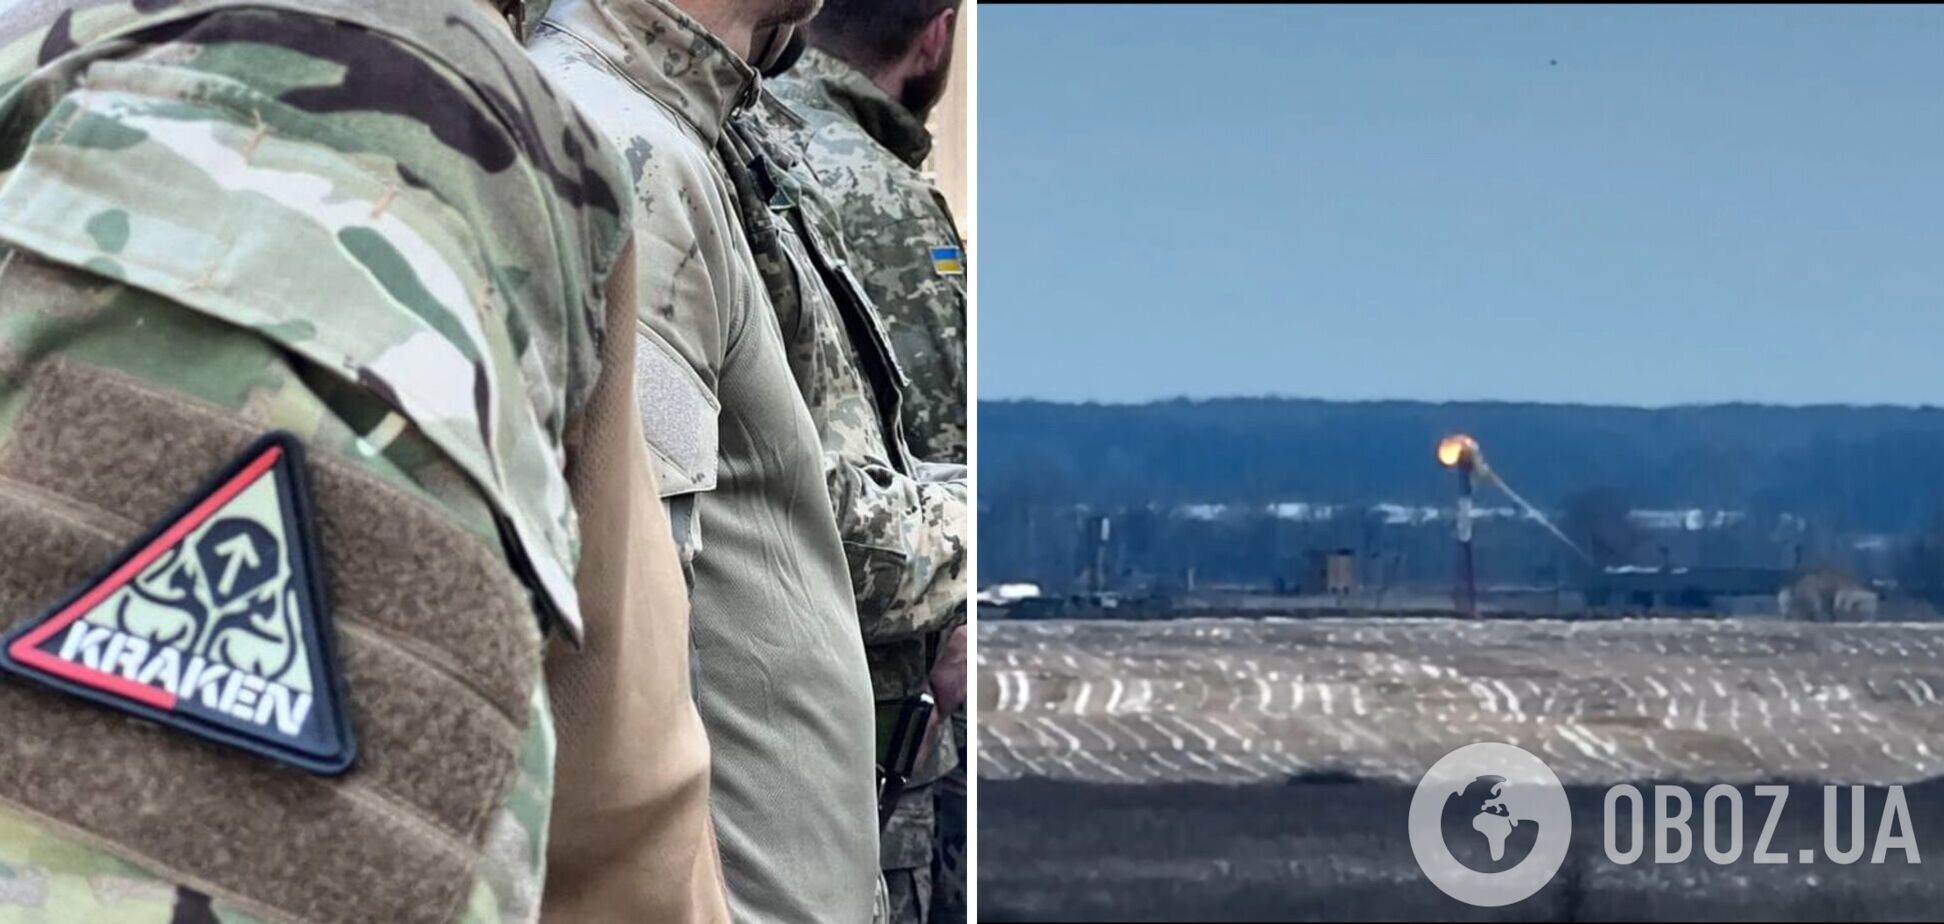 Дрон-камикадзе спецподразделения 'KRAKEN' уничтожил автономную башню наблюдения 'Гренадер' в Брянской области. Видео